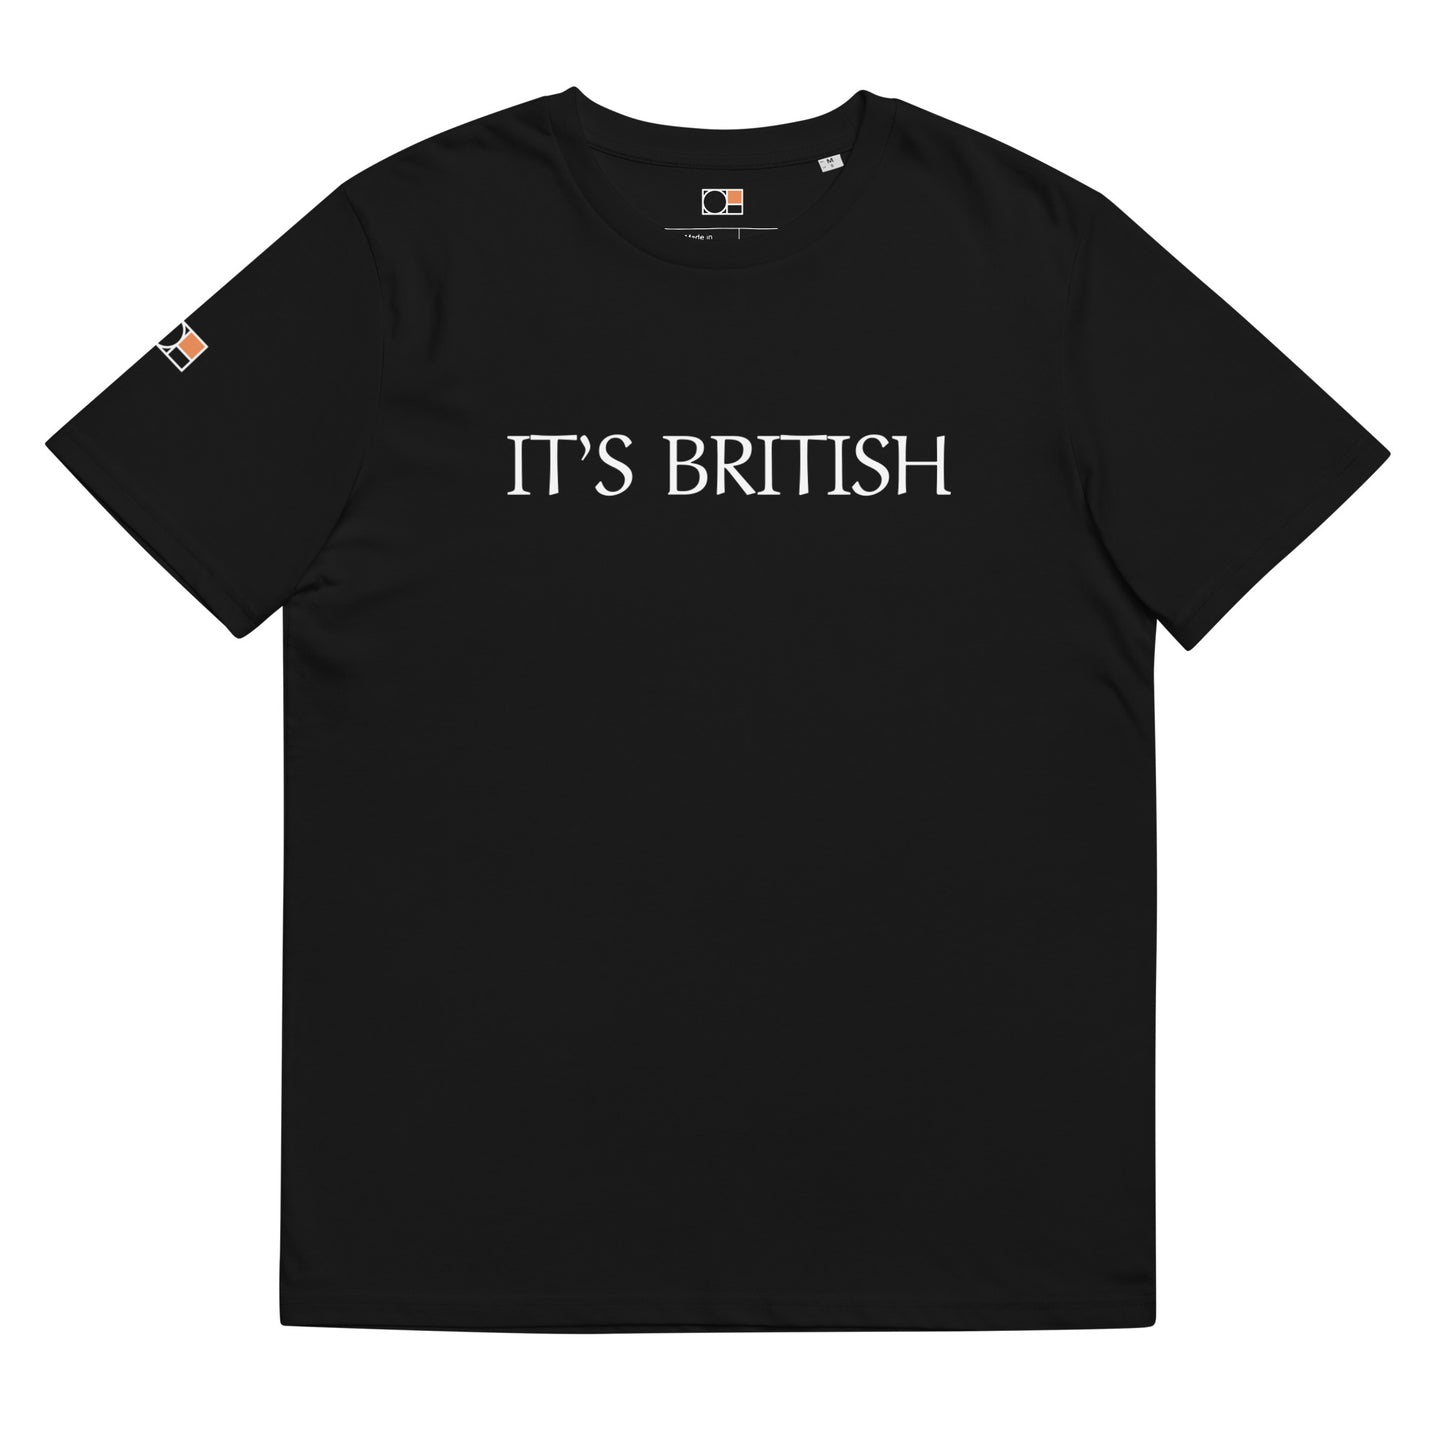 It’s BRITISH